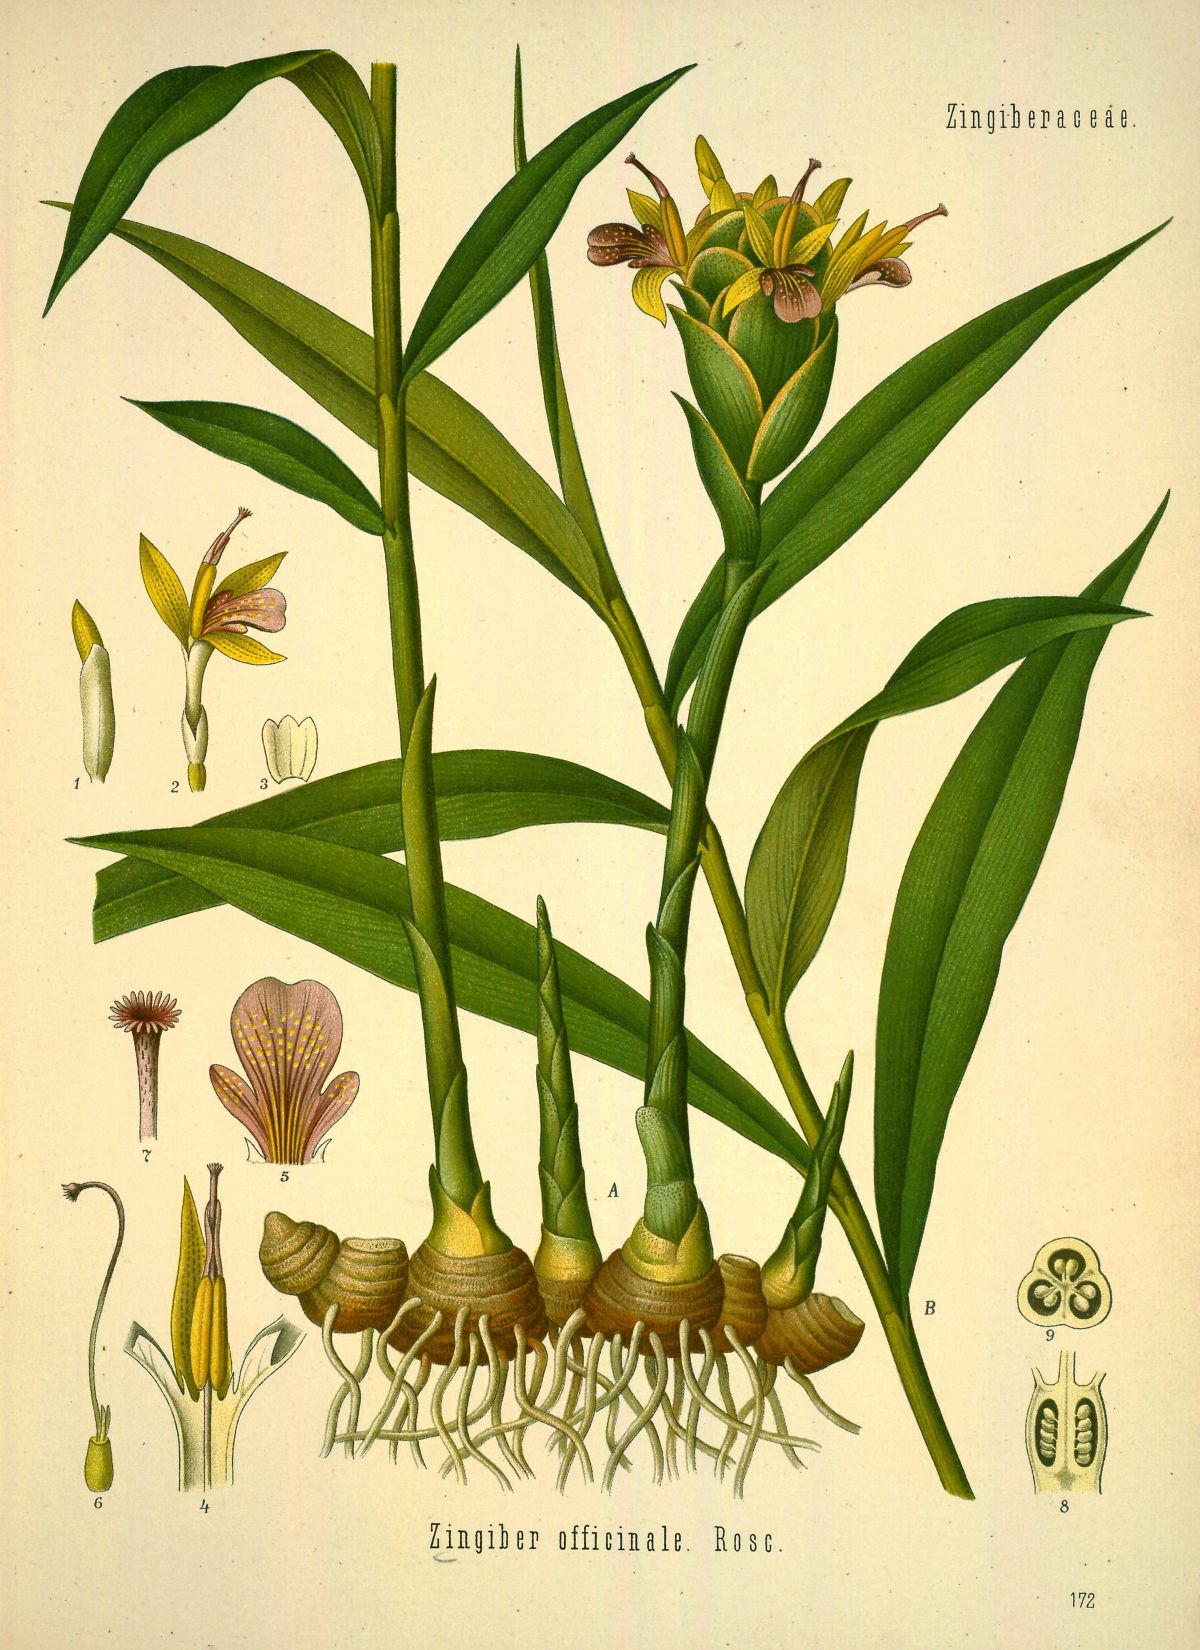 ຂີງແມ່ນມີການນຳໃຊ້ມາຍາວນານ ເຊີ່ງຮູບພາບນີ້ໄດ້ແຕ້ມນີ້ຈາກໜັງສື: Köhler, F.E., Köhler’s Medizinal Pflanzen (1883-1914)